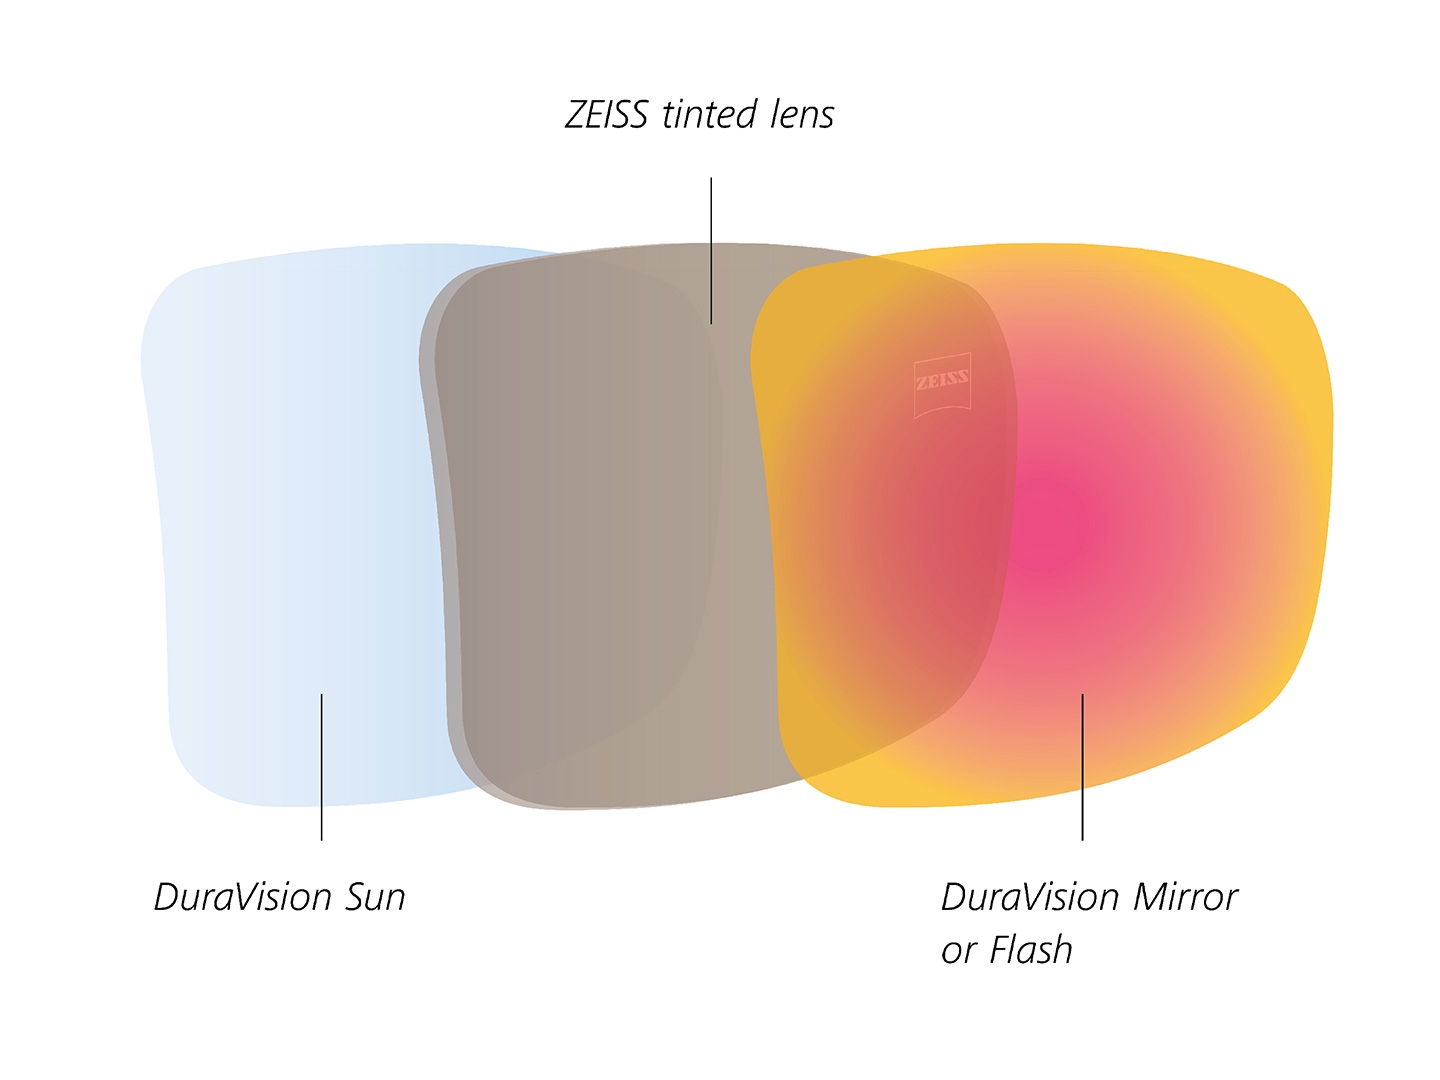 Illustratie van getinte glazen van ZEISS met coatings voor zonlicht aan de voor- en achterkant 